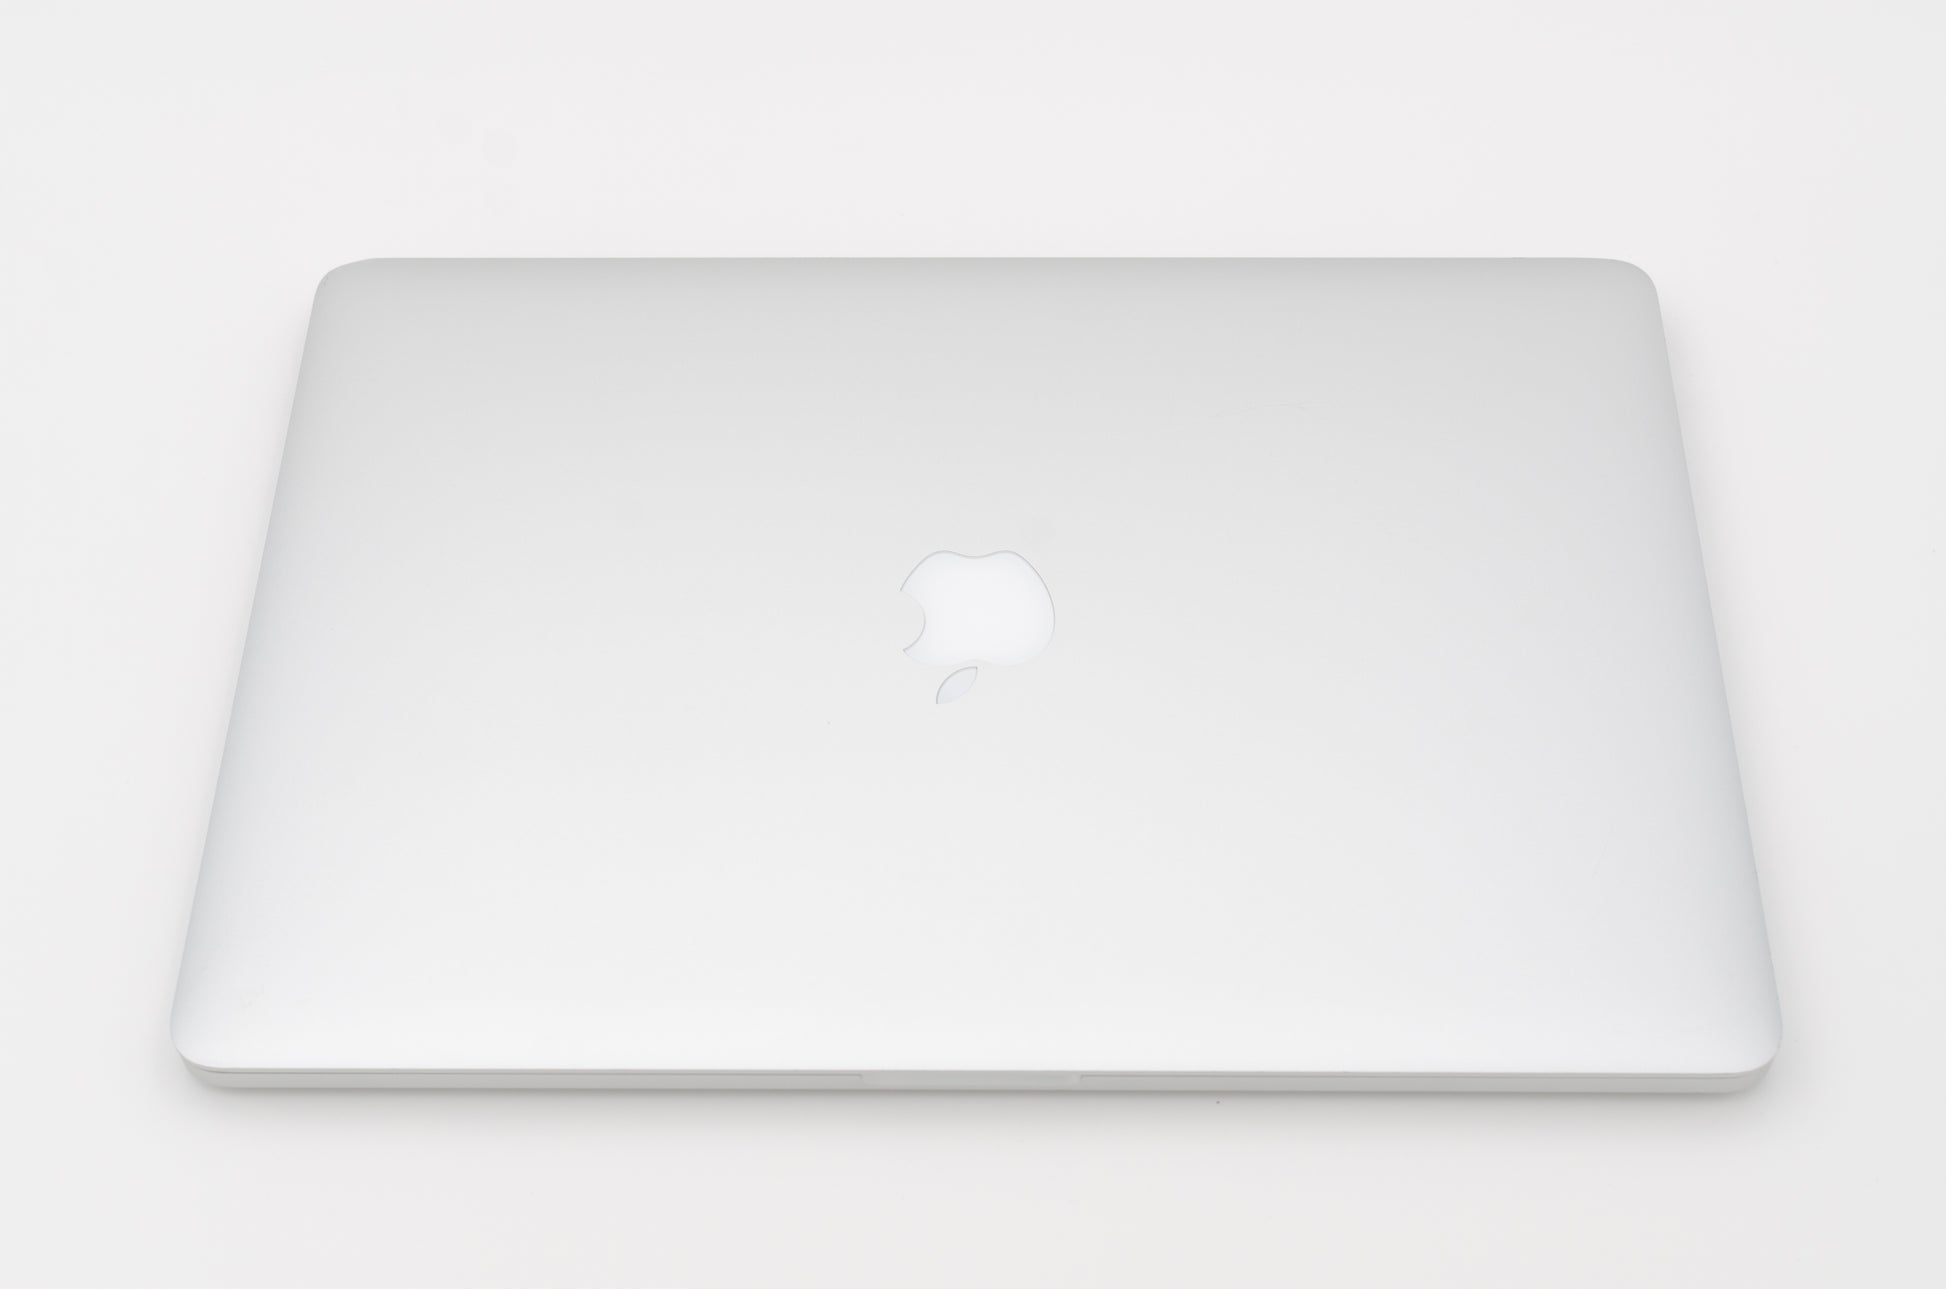 apple-mid-2012-15.4-inch-macbook-pro-a1286-aluminum-qci7 - 2.3ghz processor, 4gb ram, gt 650m - 1gb gpu-md103ll/a-3